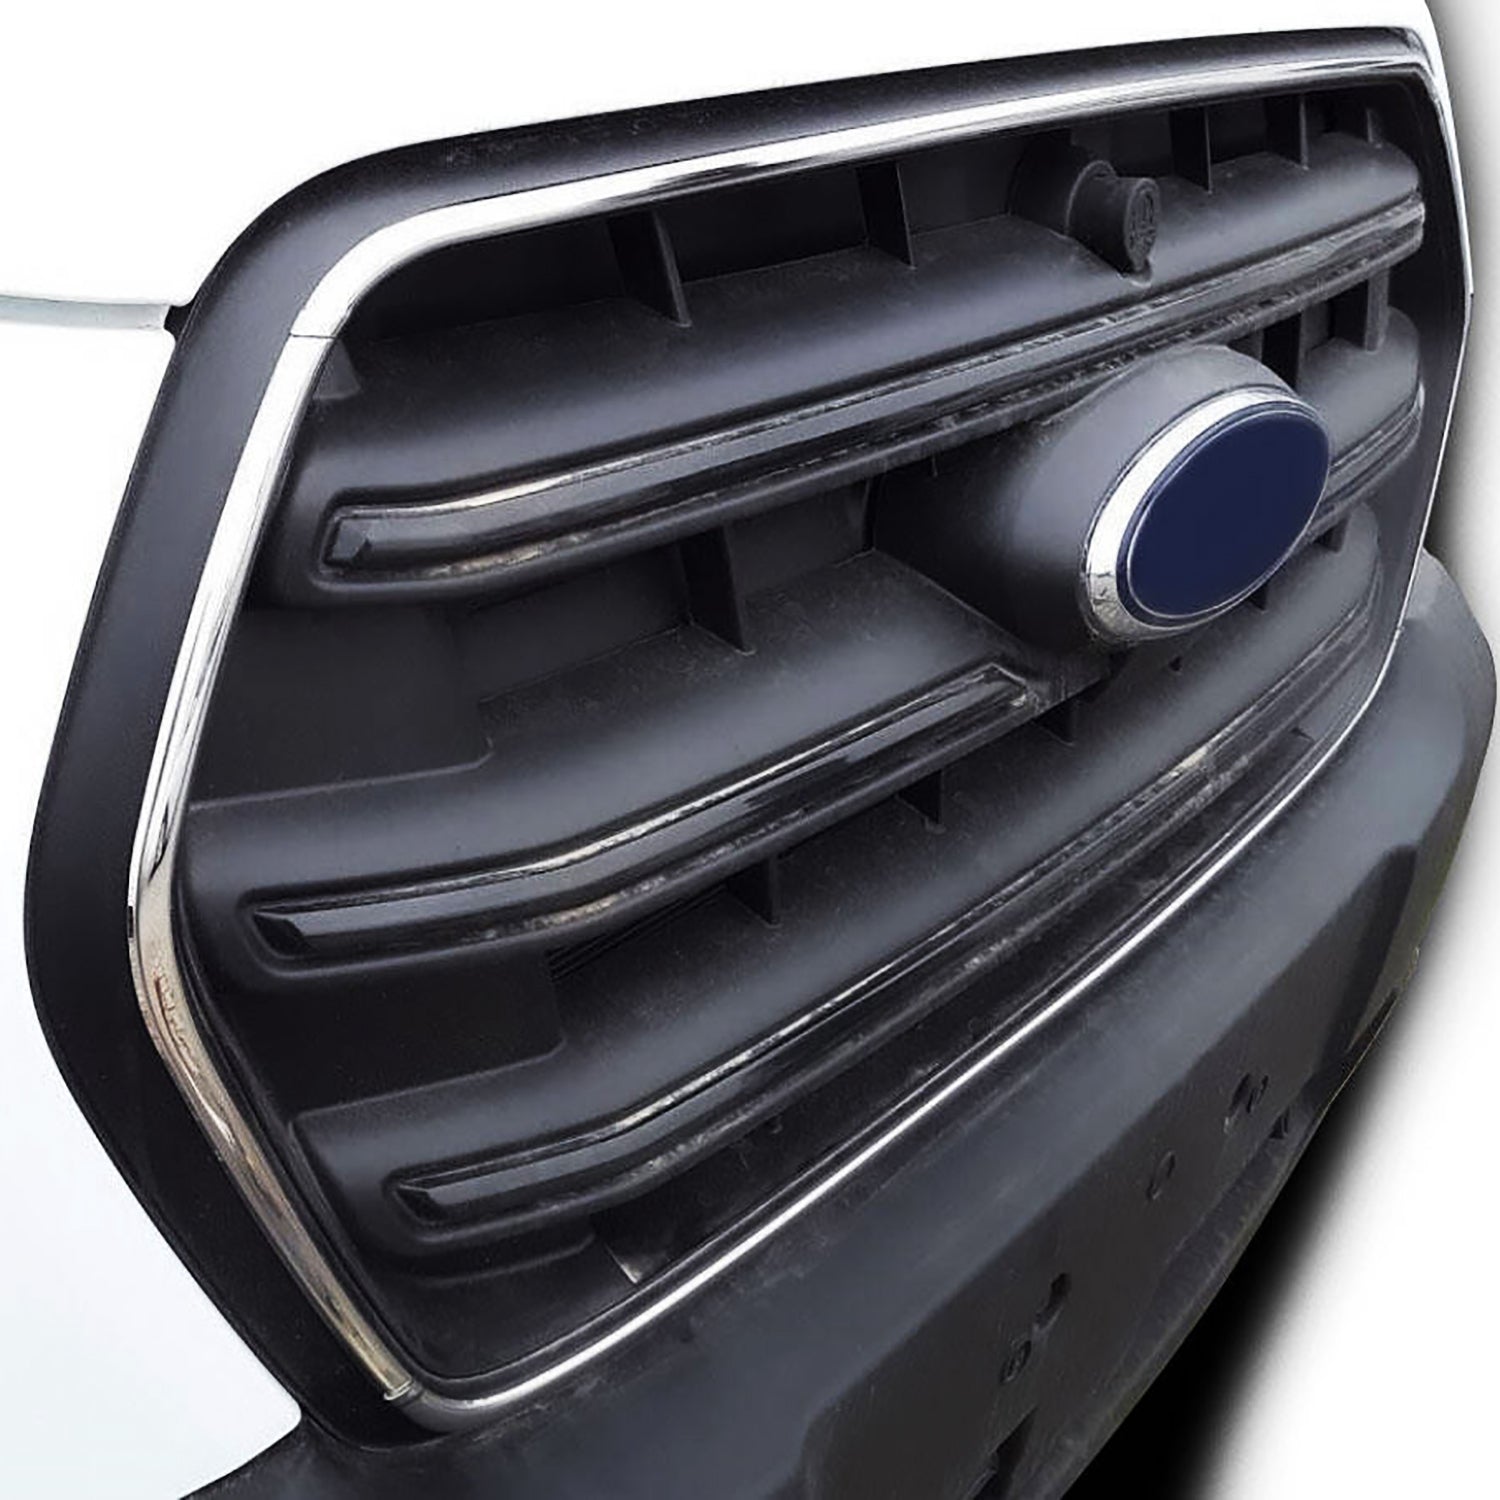 Ford Transit Krom Ön Panjur Çerçevesi 4 Parça 2019 ve Sonrası Modeli ve Fiyatı 8696